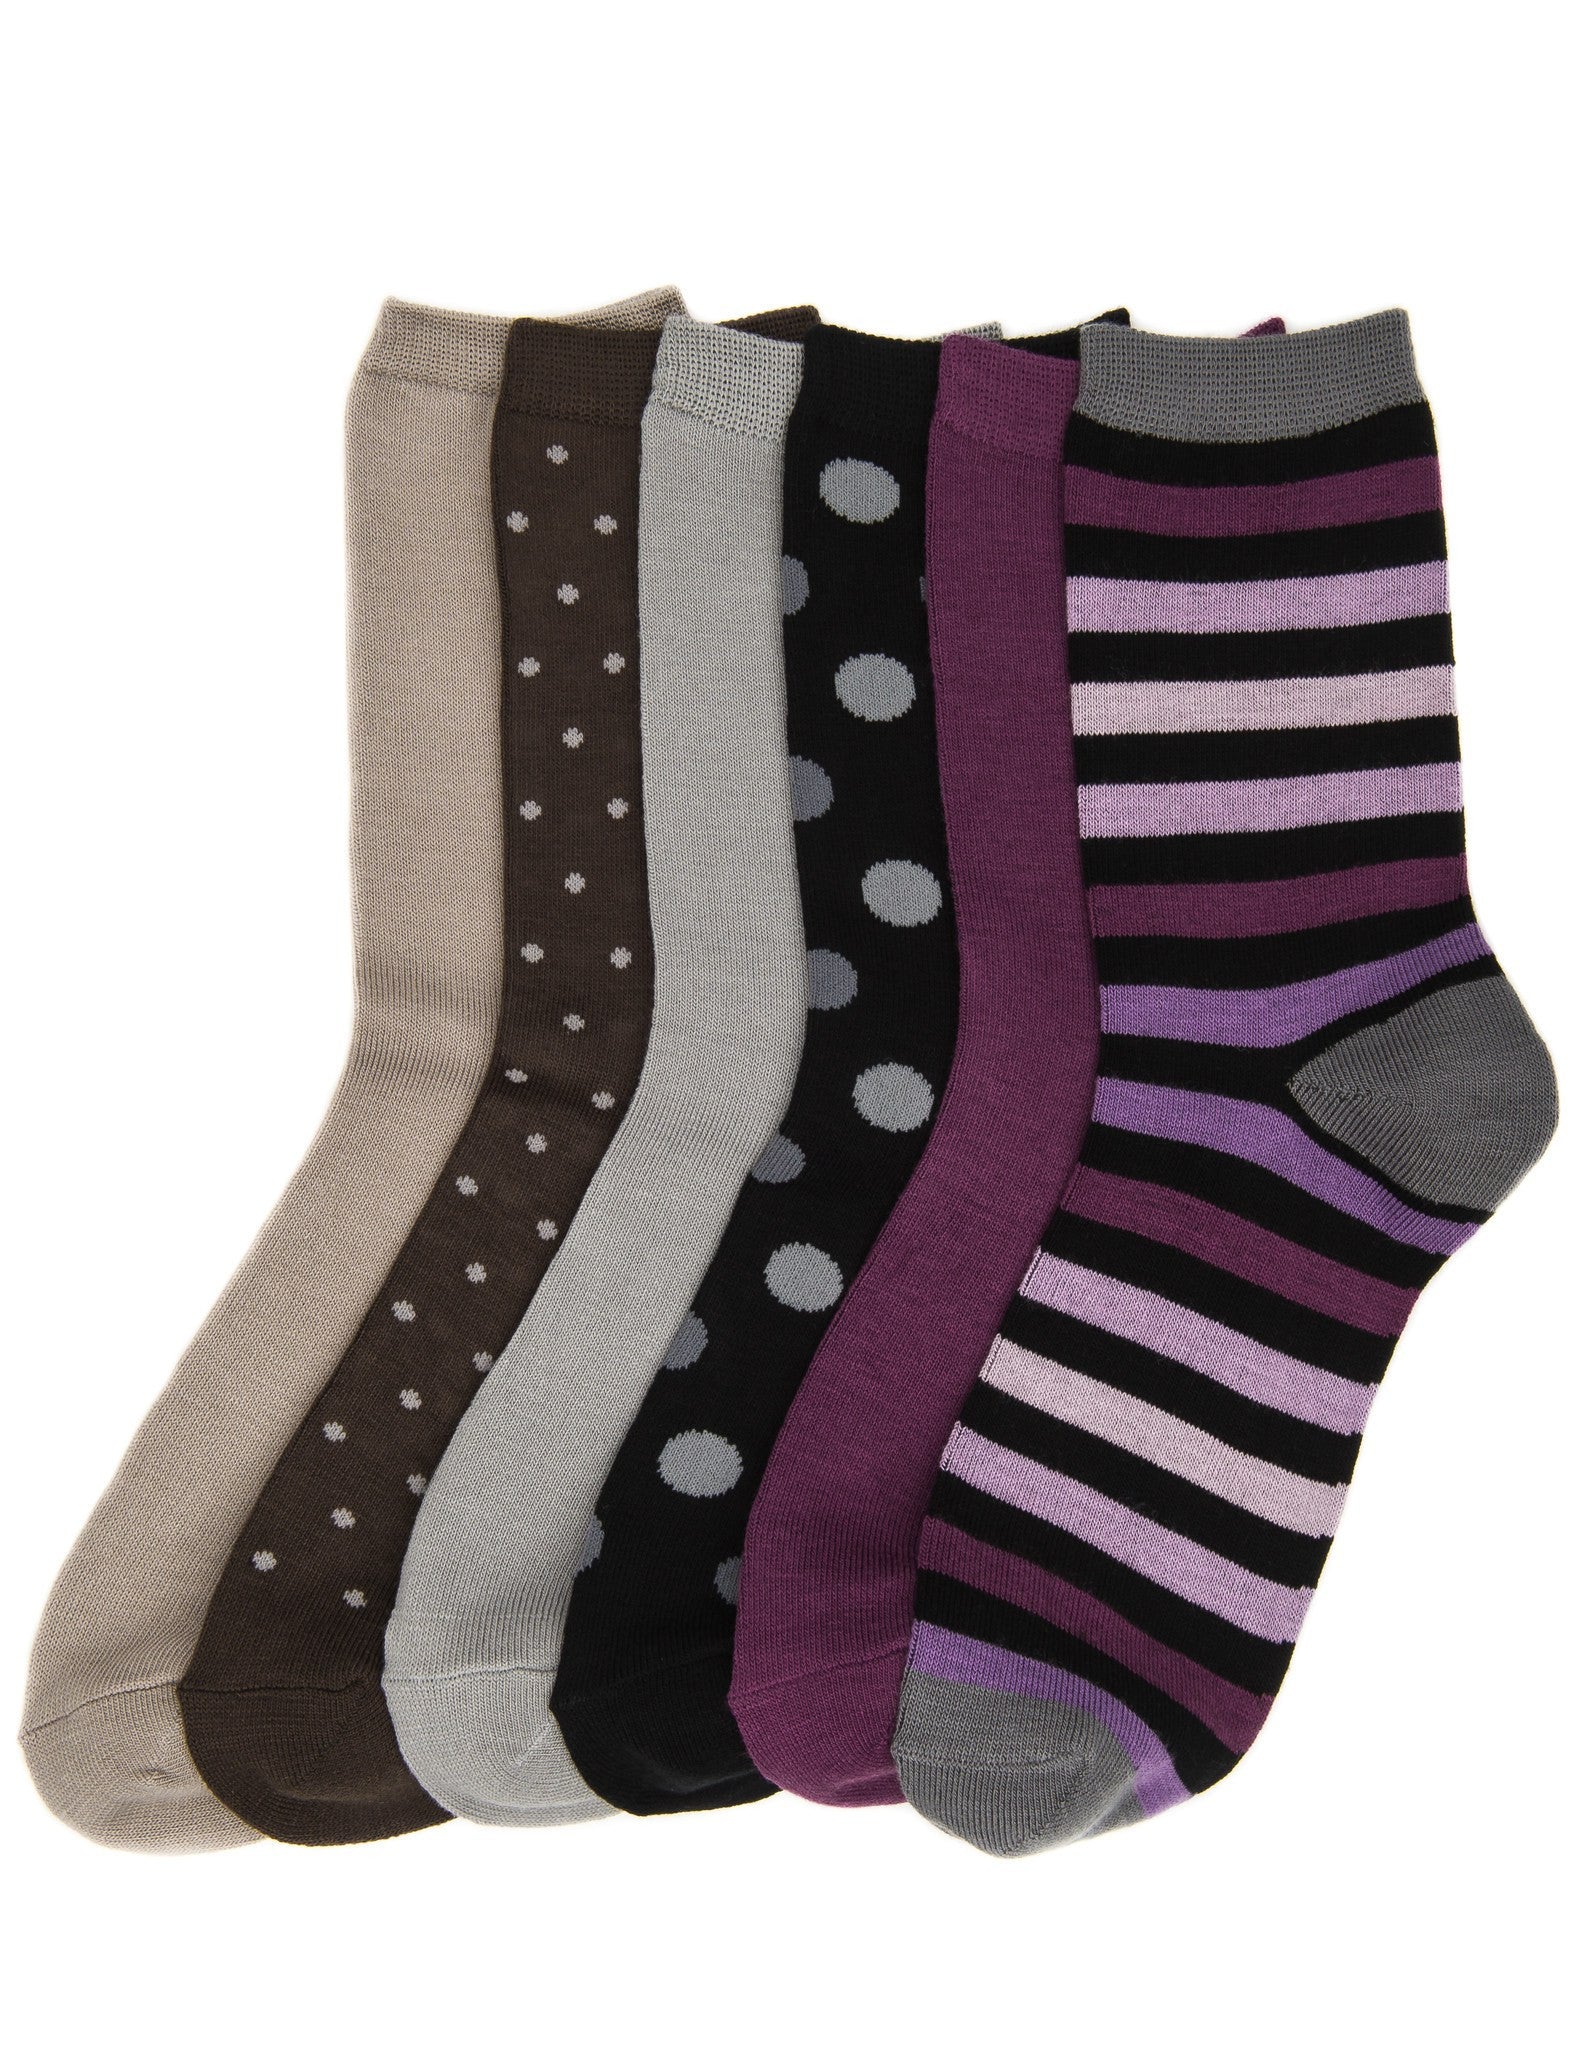 Women's Soft Premium Crew Socks - 6 Pairs